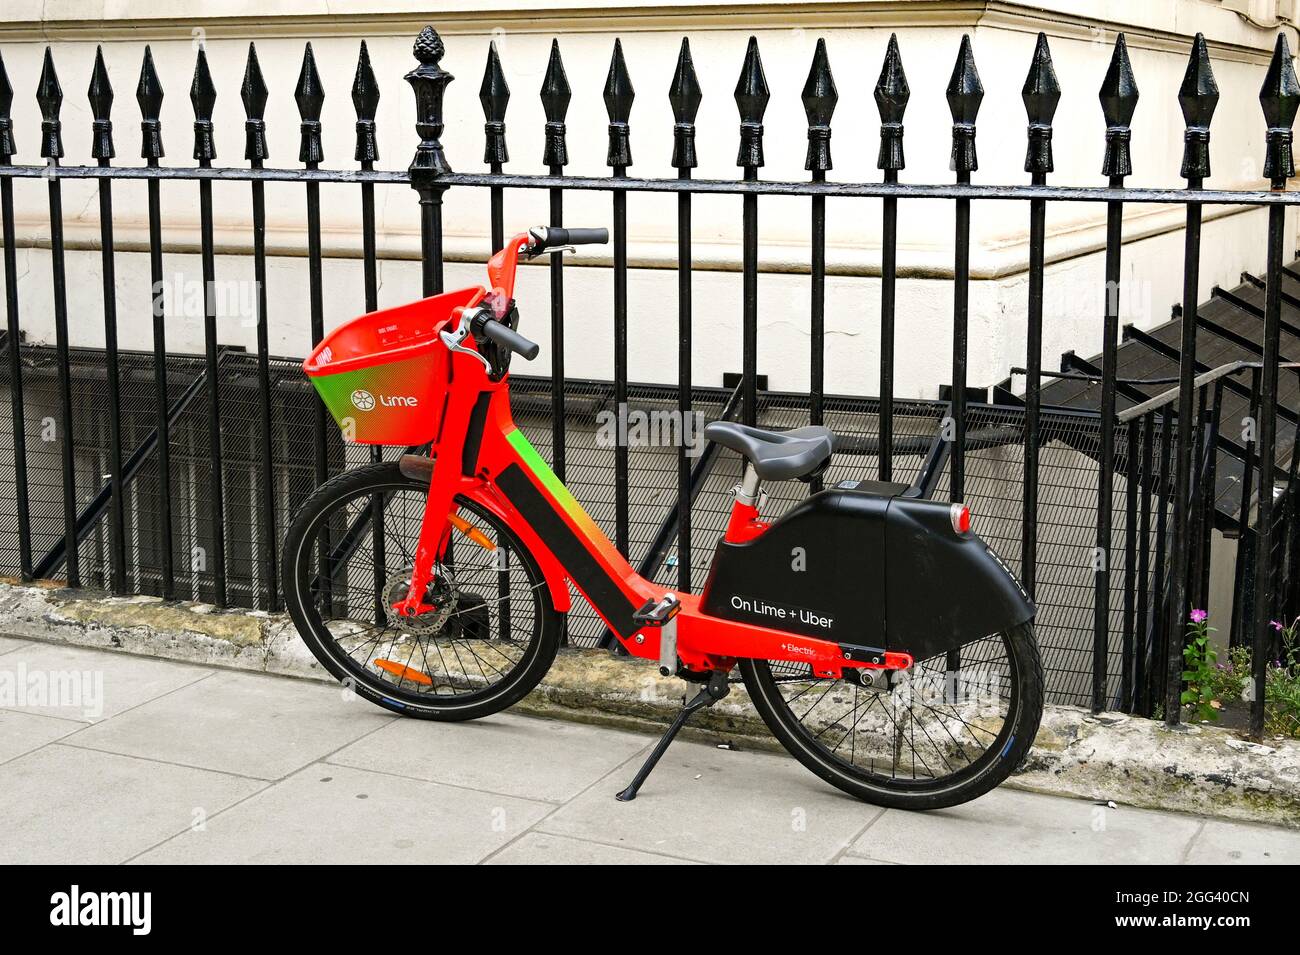 London, England - 2021. August: Elektrofahrrad zum Verleih auf einem Bürgersteig geparkt. Es ist Teil des Lime Bike Fahrradverleihsystems in London. Stockfoto